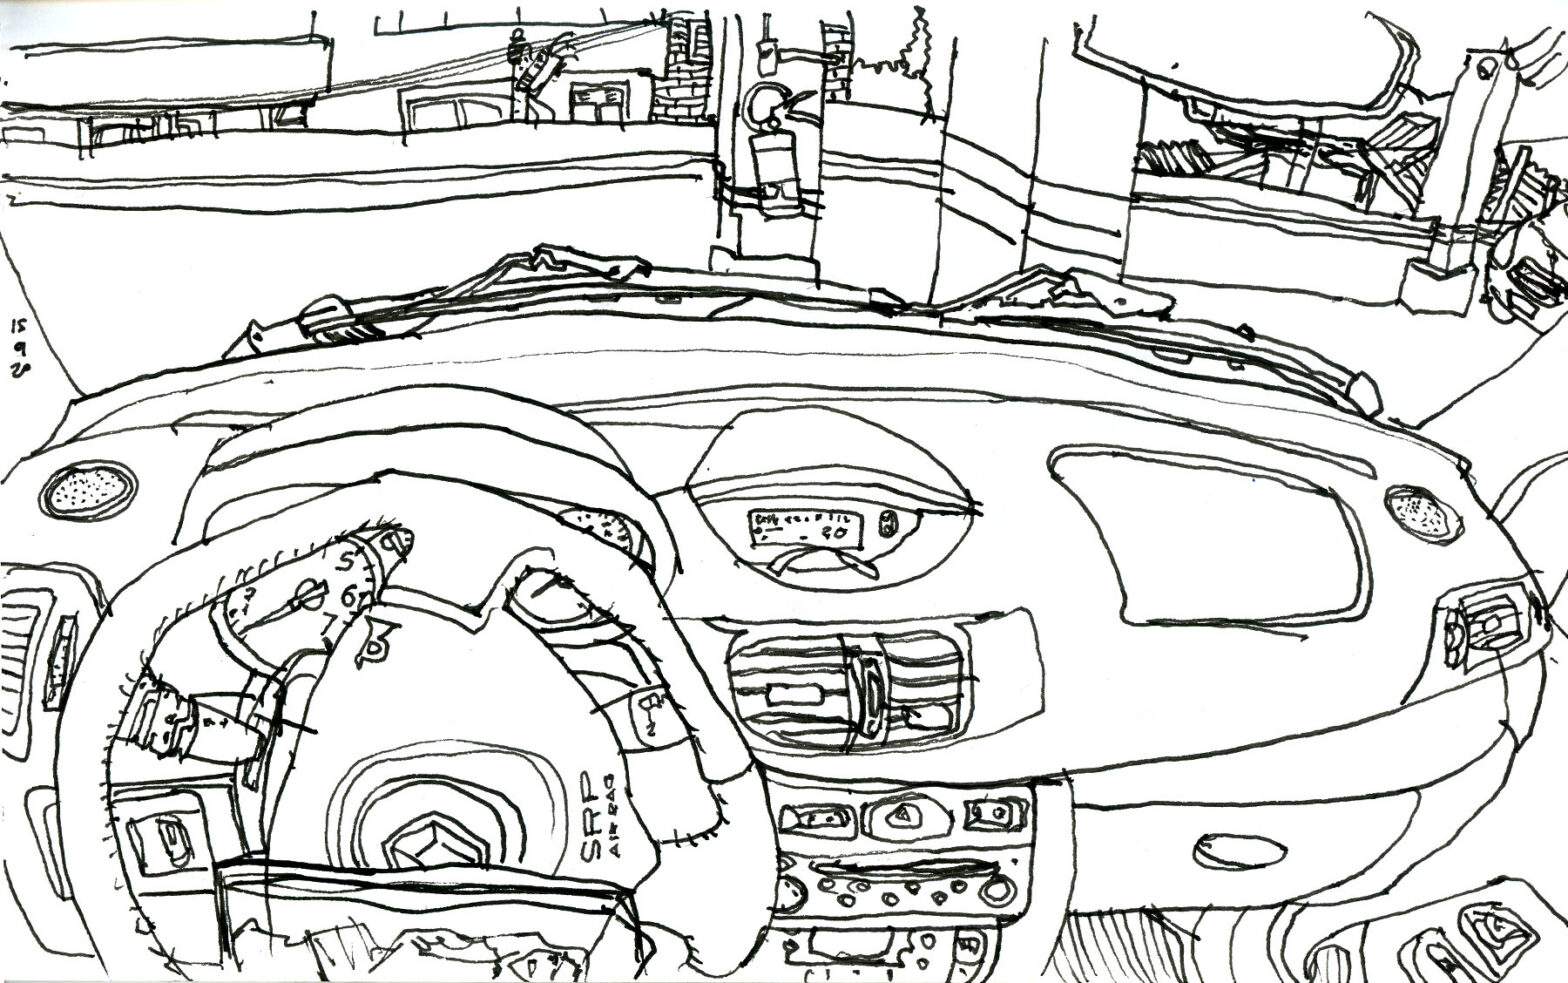 Desenho a traço do painel de um carro tendo como fundo o muro de um estacionamento